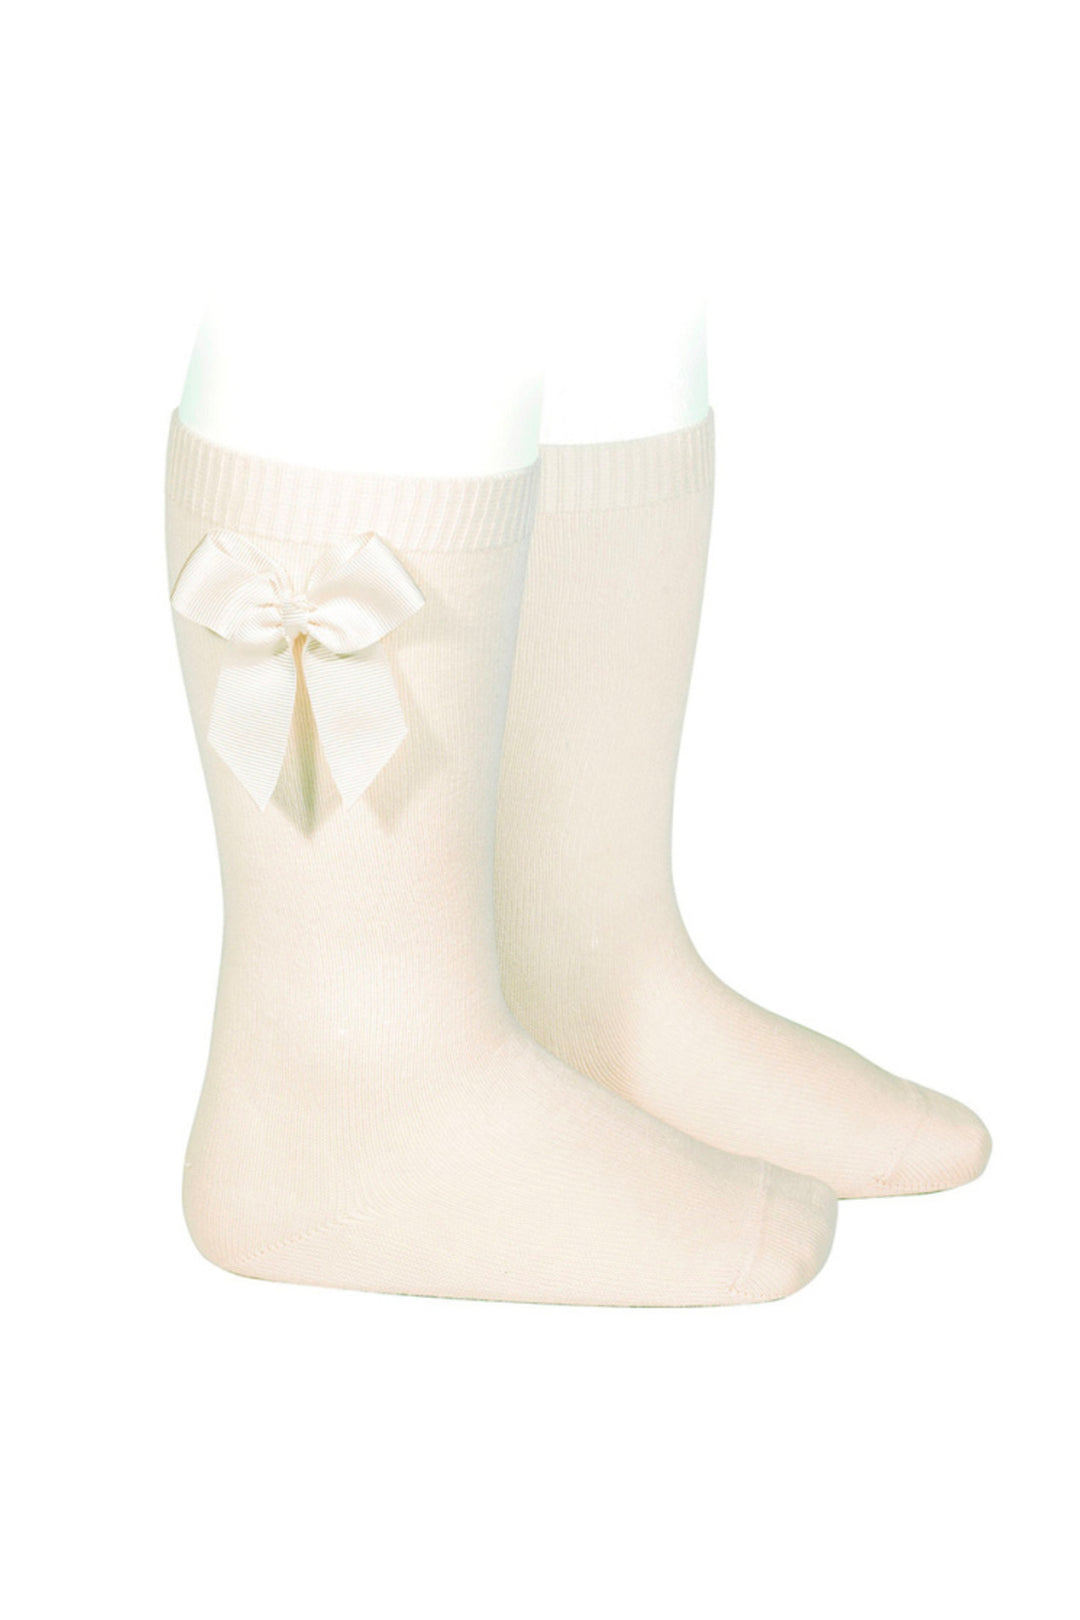 Condor Cream Grosgrain Bow Knee High Socks | Millie and John